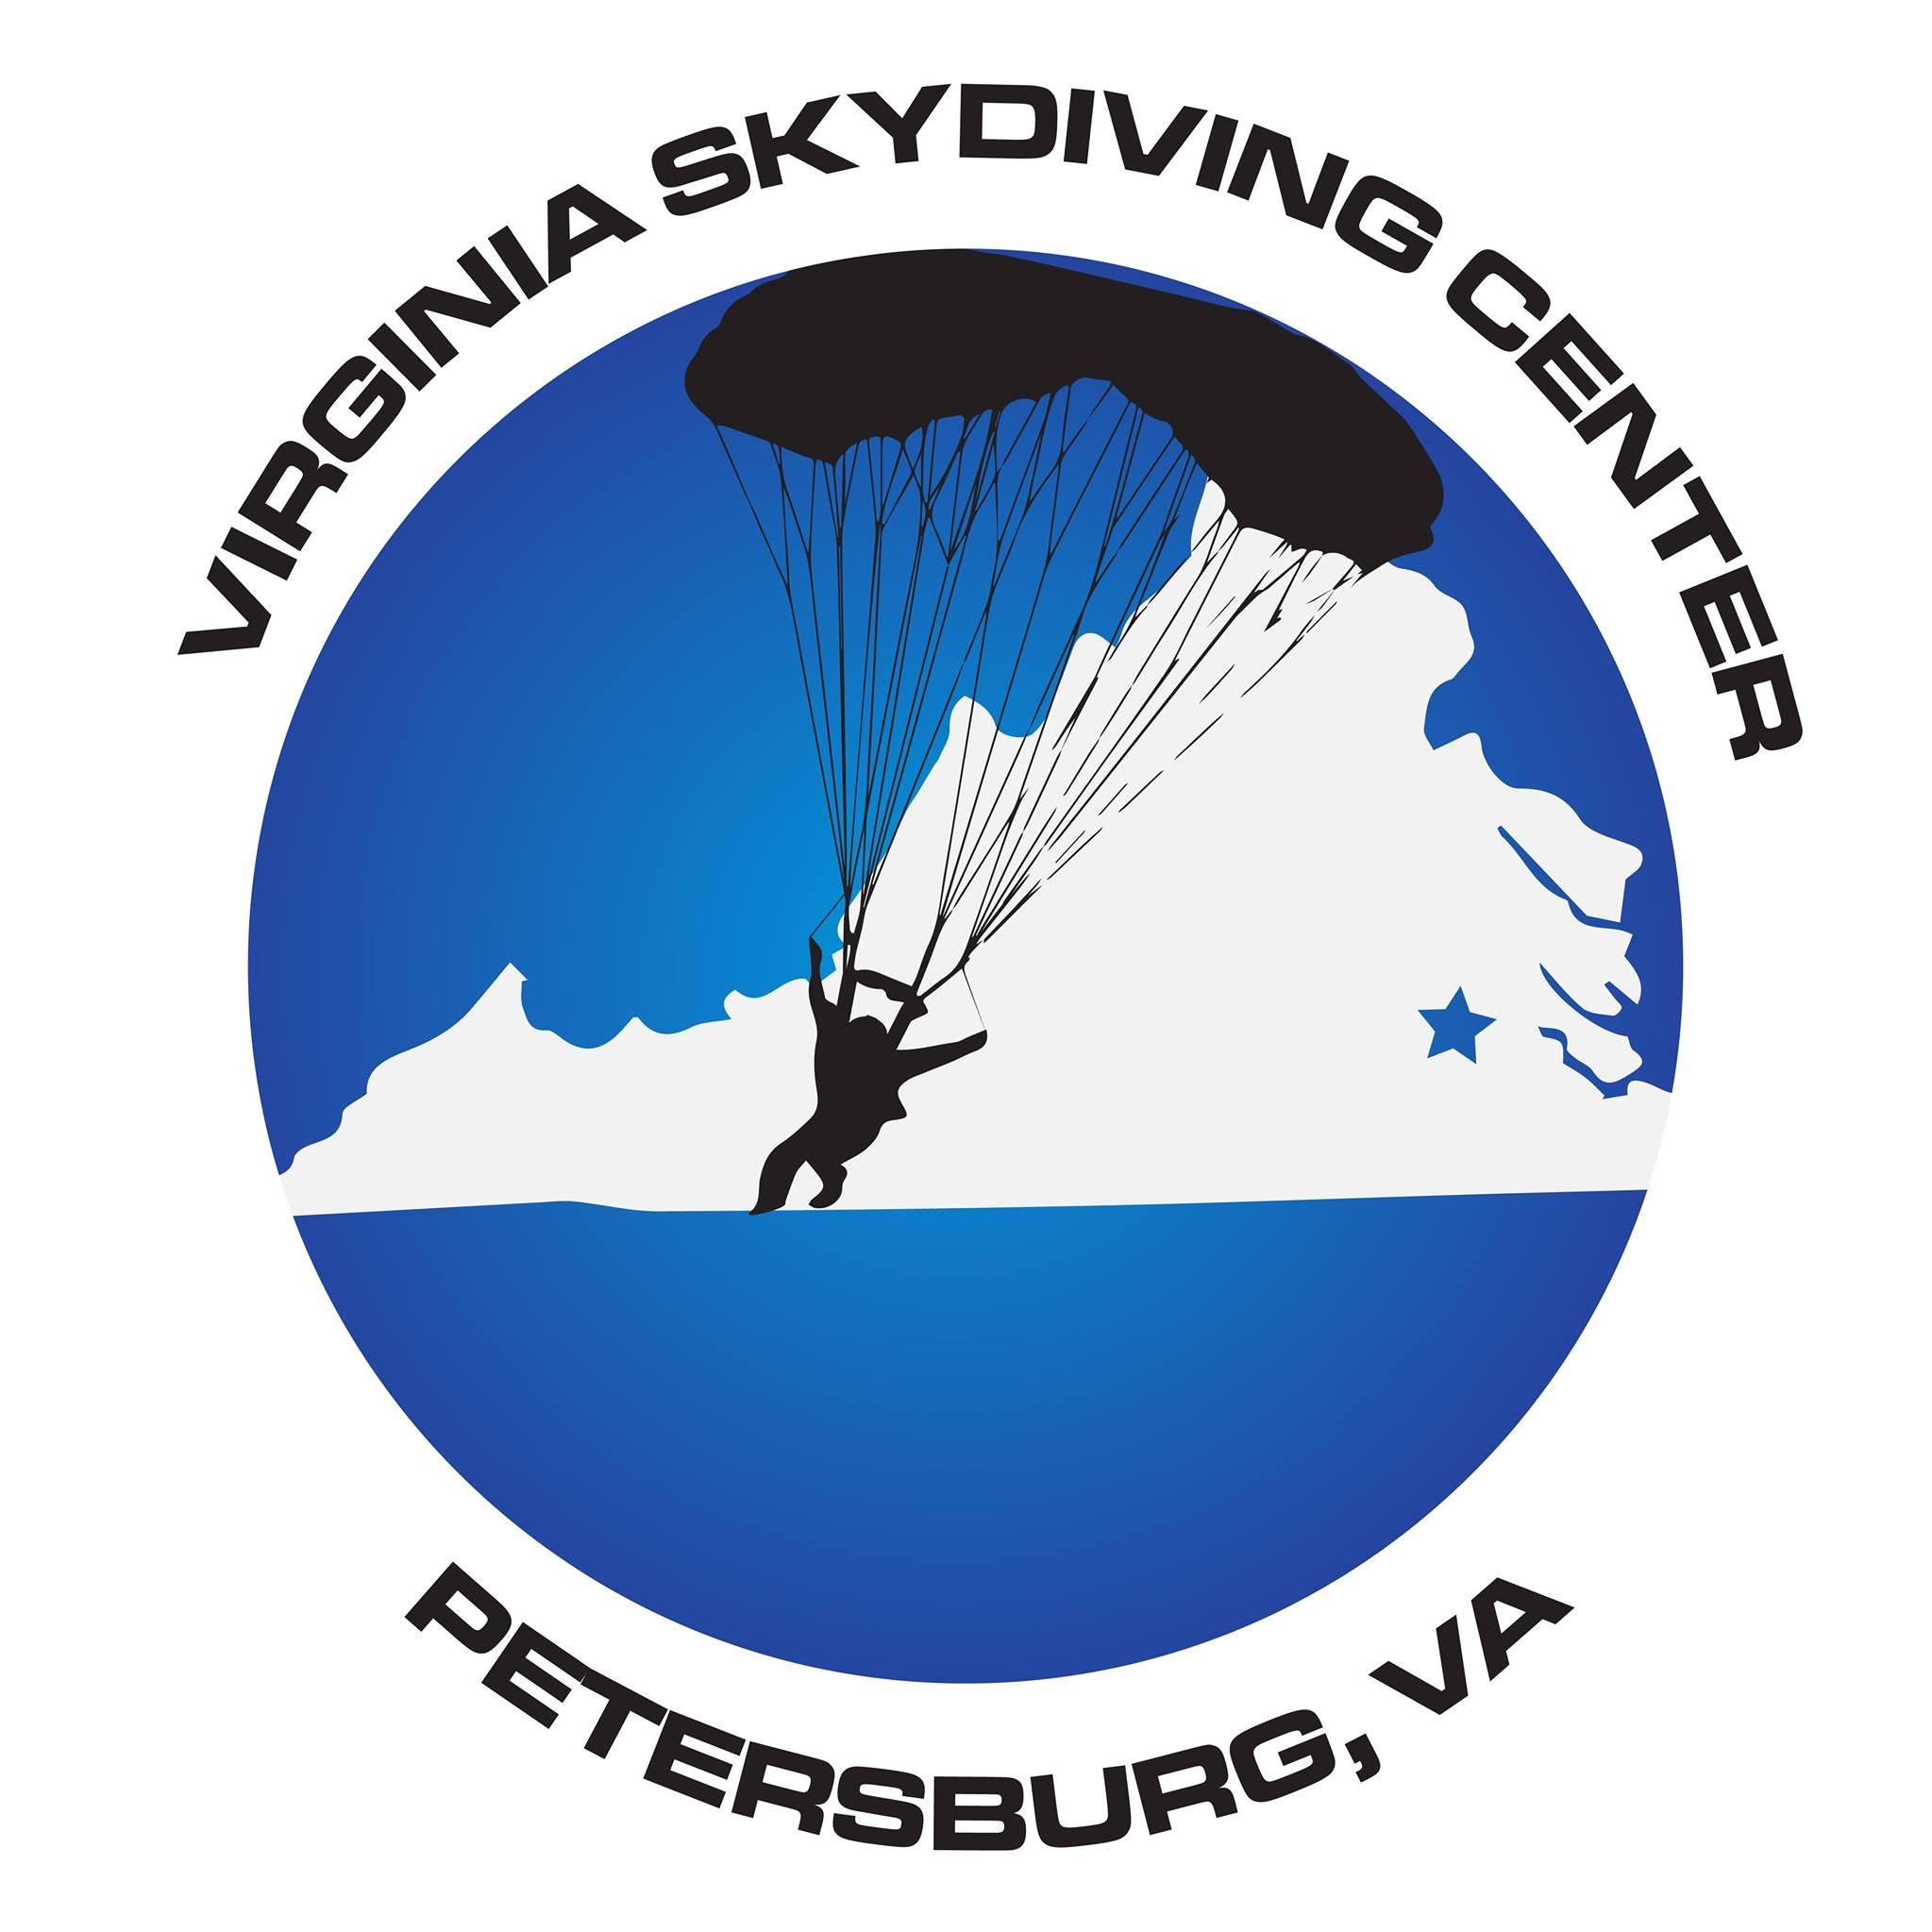 Virginia Skydiving Center logo